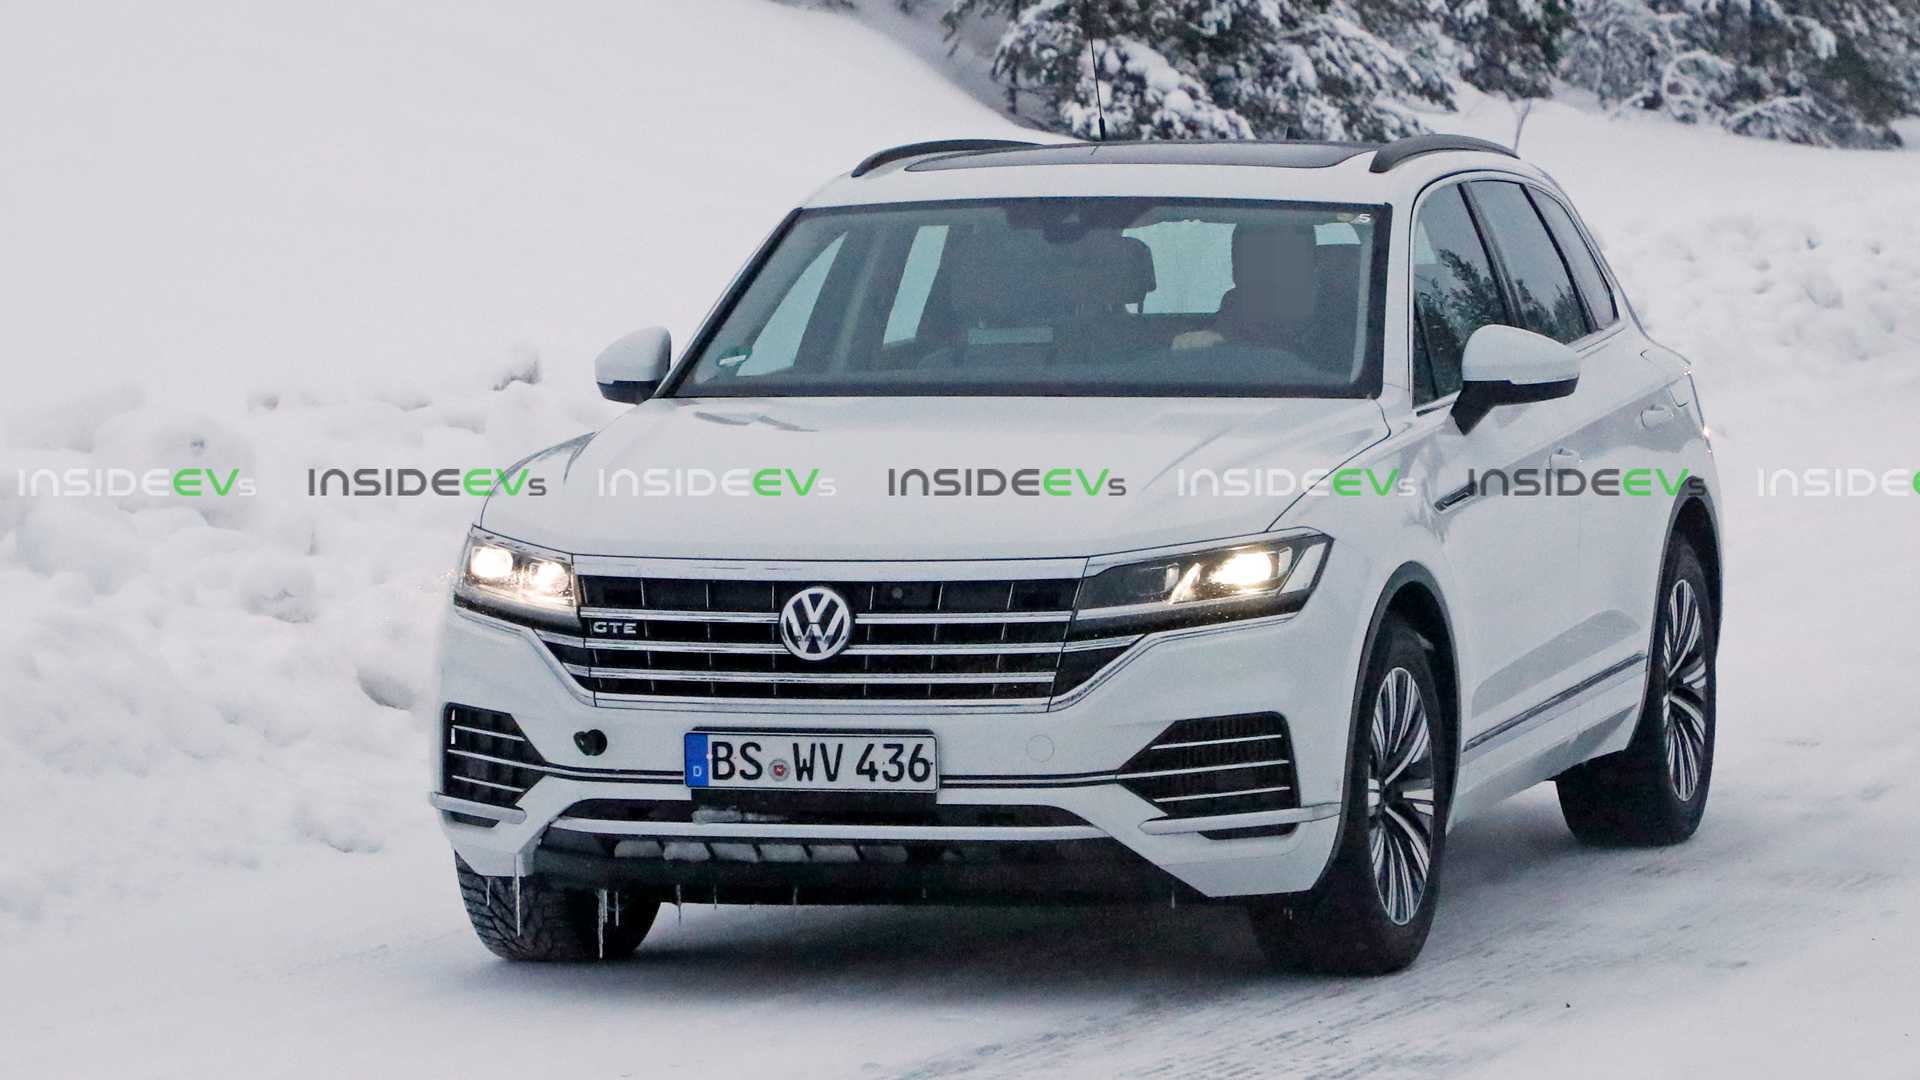 Le nouveau Volkswagen Touareg hybride rechargeable surpris en plein test